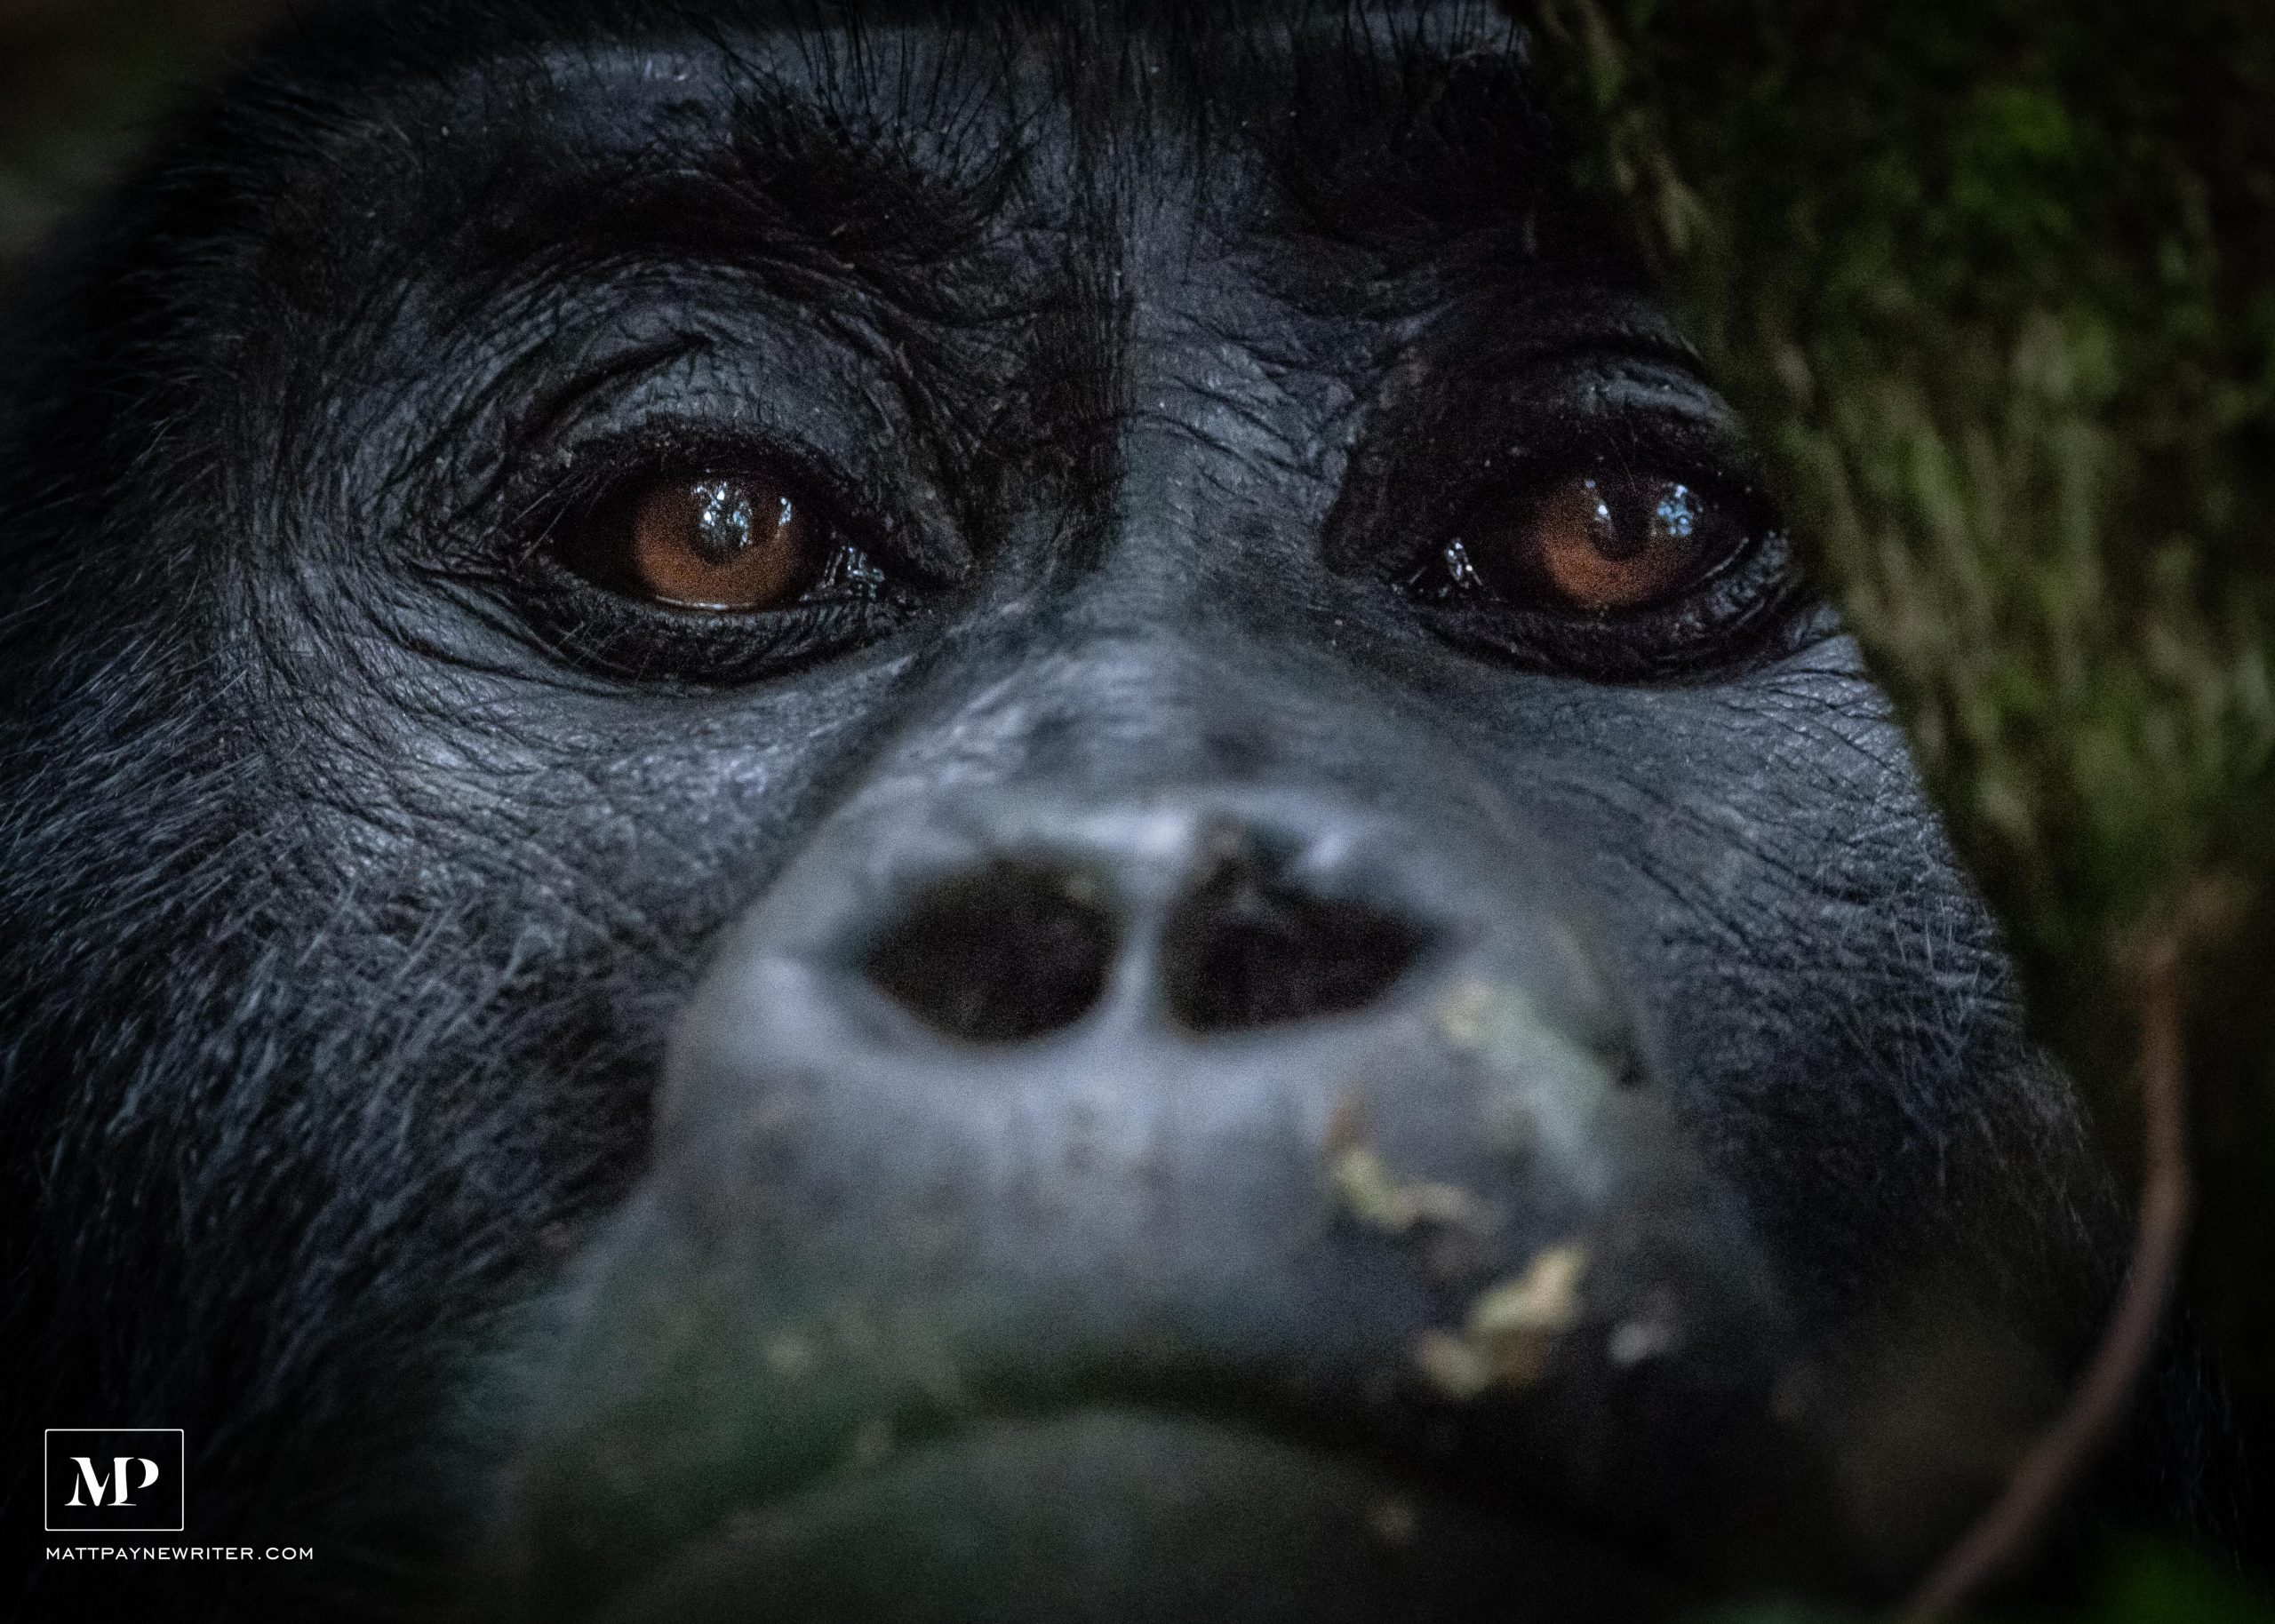 wild mountain gorillas of Uganda